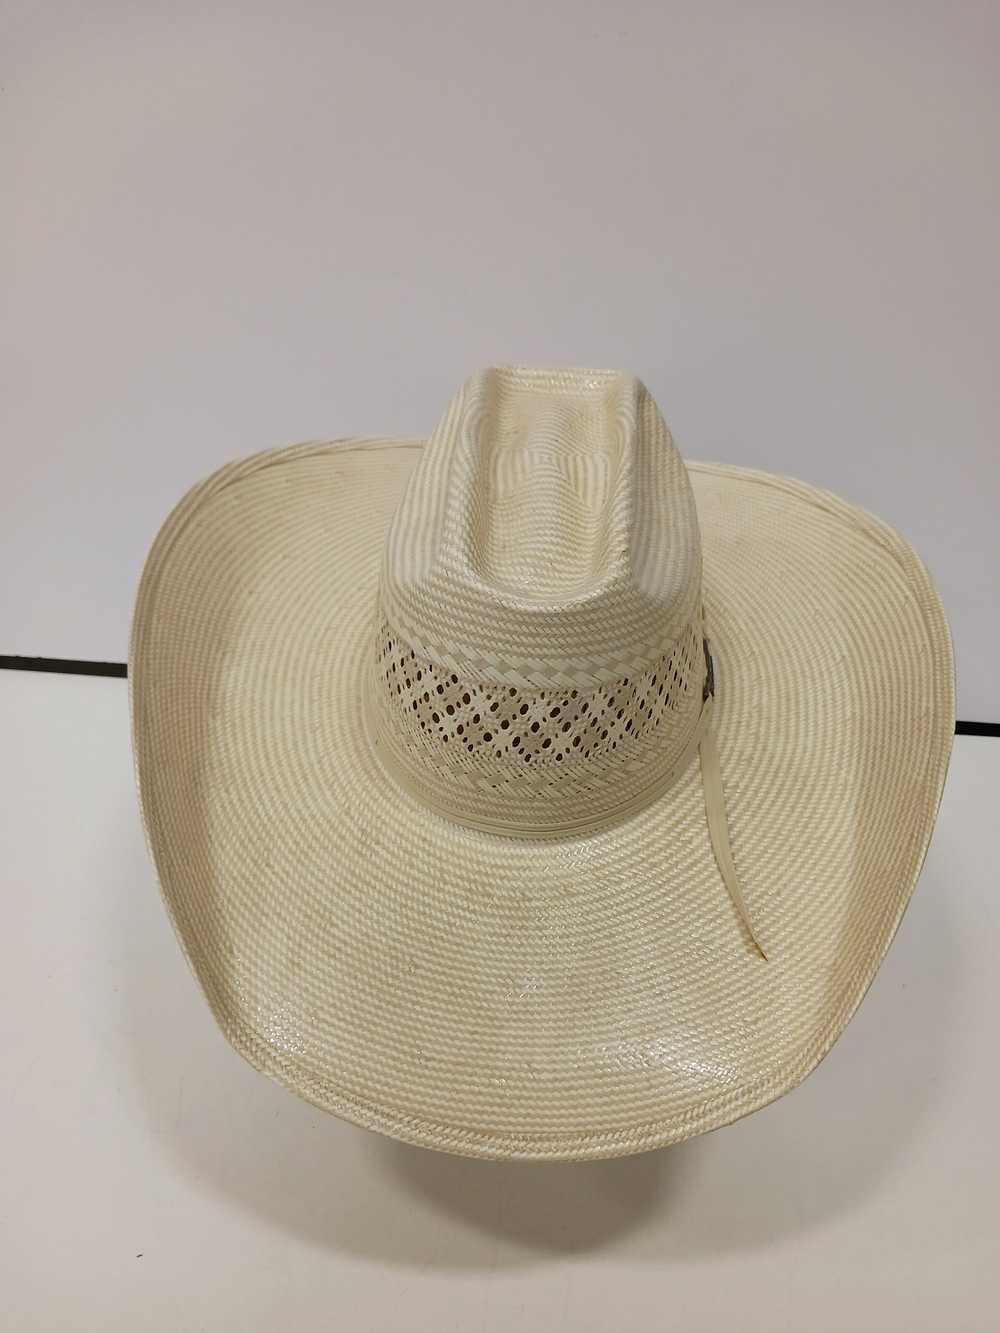 Men's Cream American Cowboy Hat - image 4